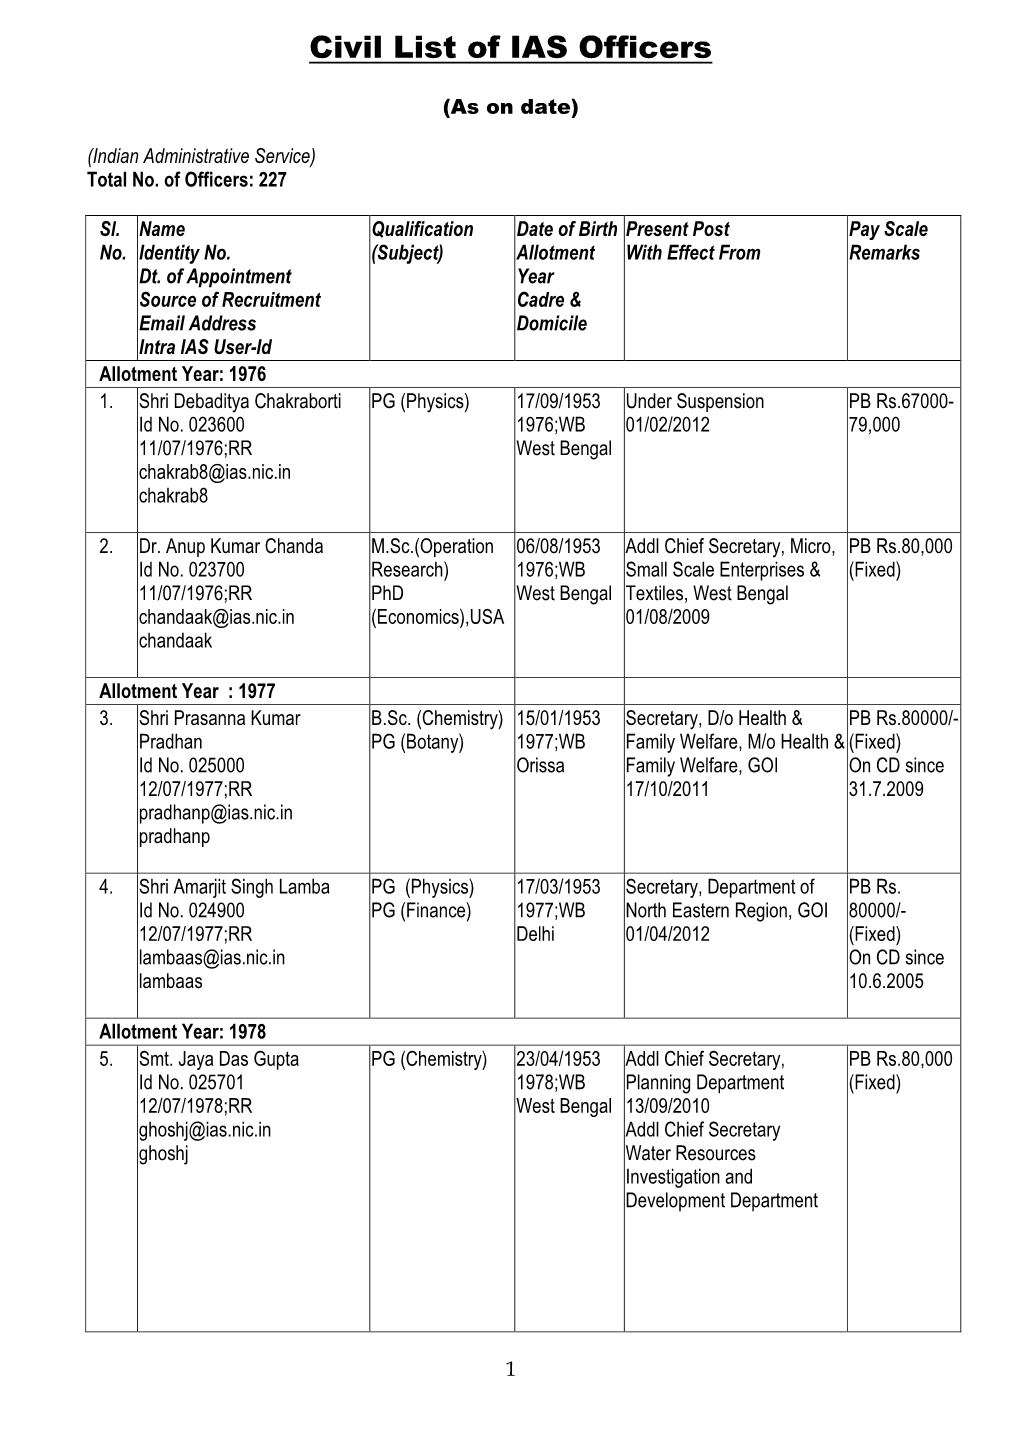 Civil List of IAS Dynamic